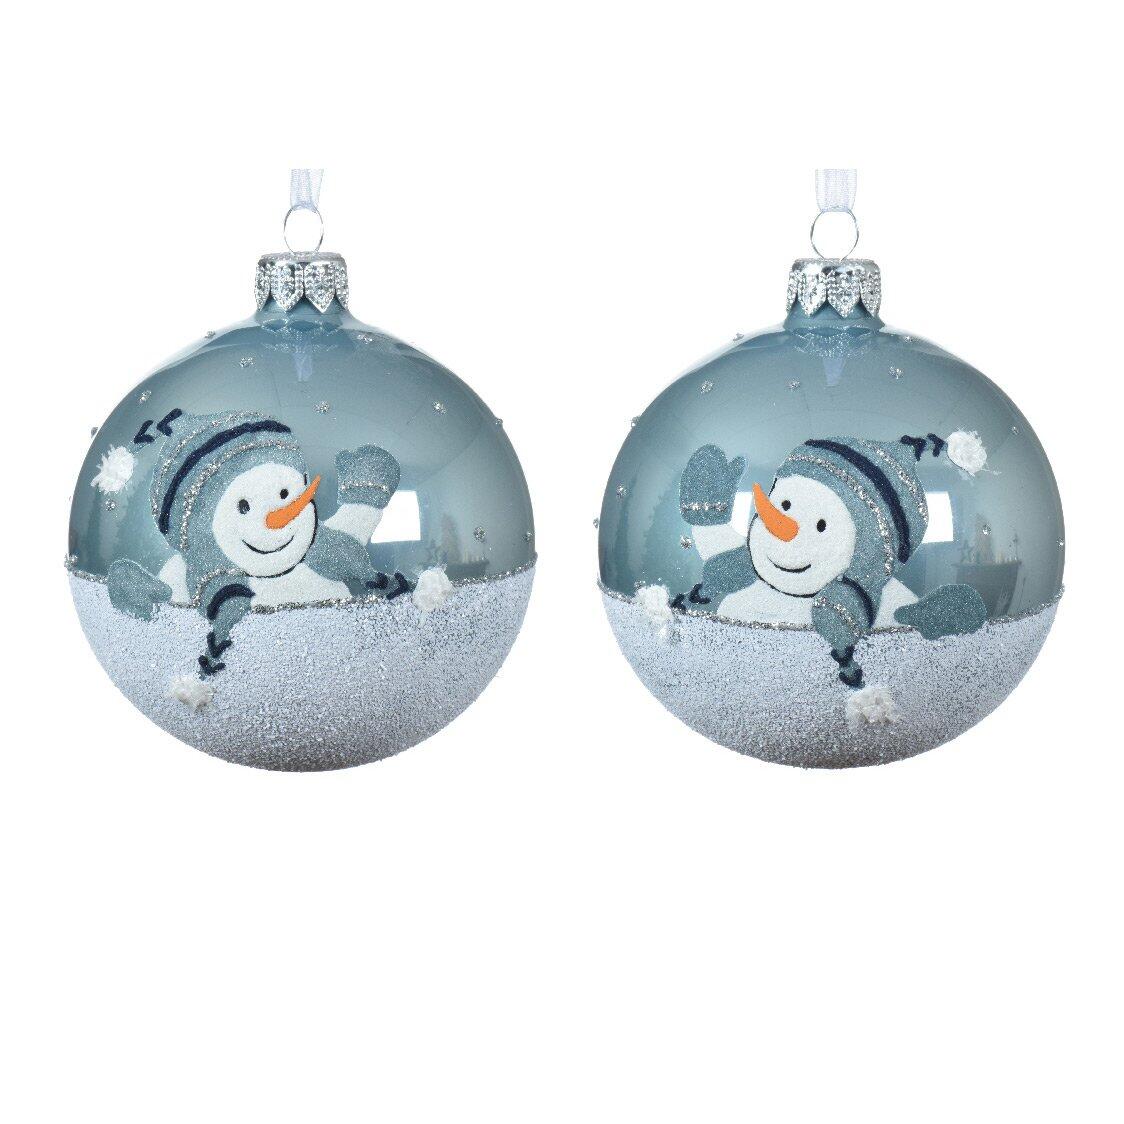 Lotto 6 di palline di Natale di vetro Scintilla Blu nebbia 1